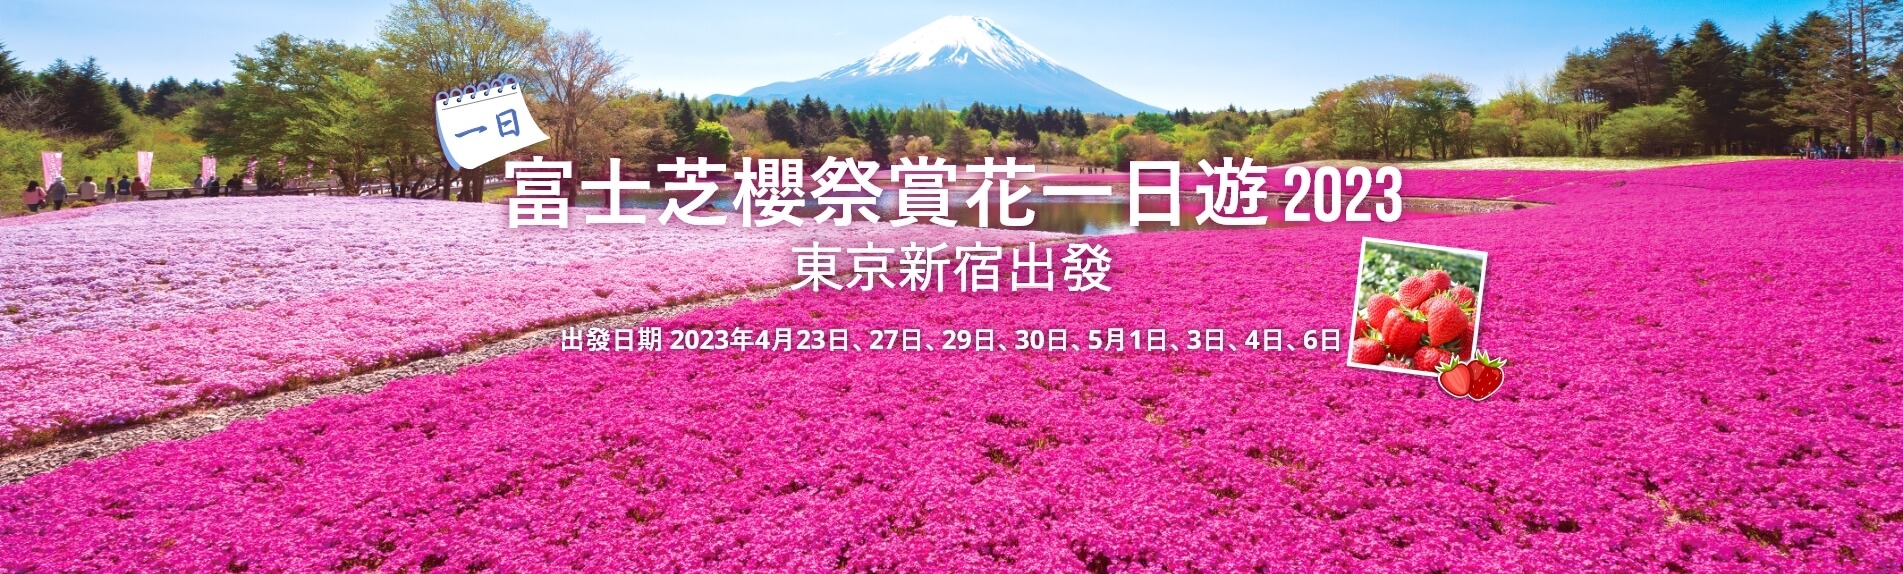 富士芝櫻祭賞花一日遊 2023